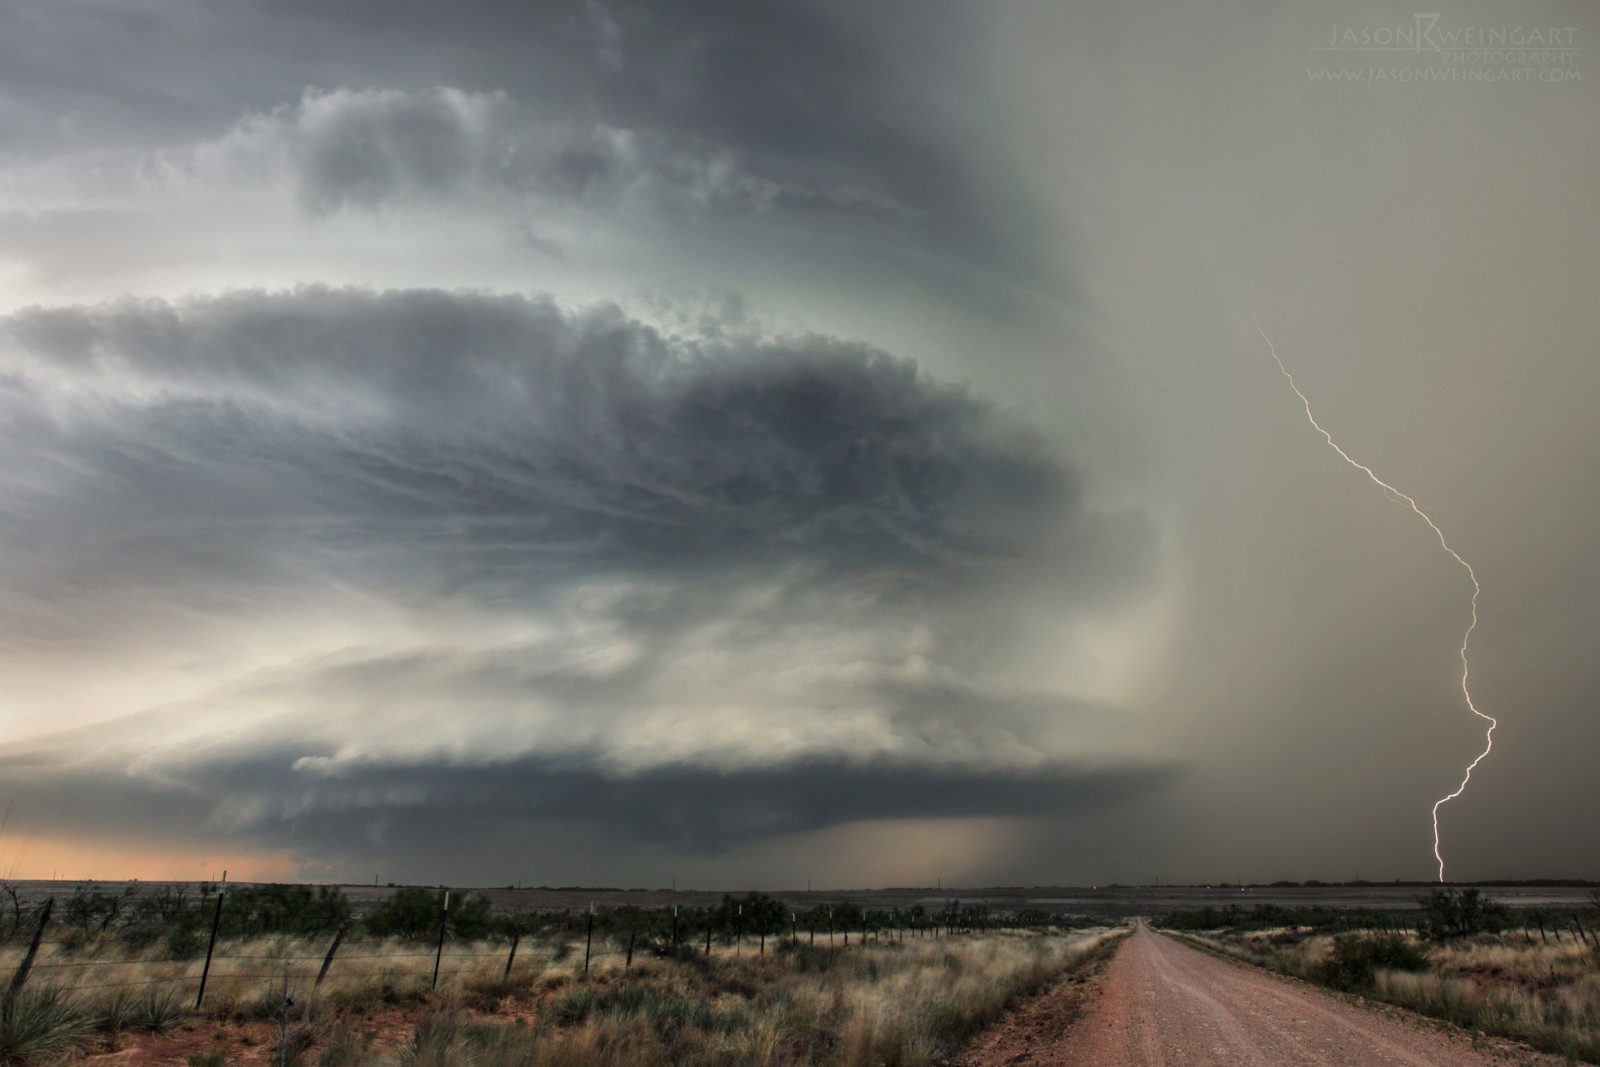 20 Εκπληκτικές φωτογραφίες από τον μεγαλύτερο κυνηγό καταιγίδων. Εντυπωσιακές. - Εικόνα 10